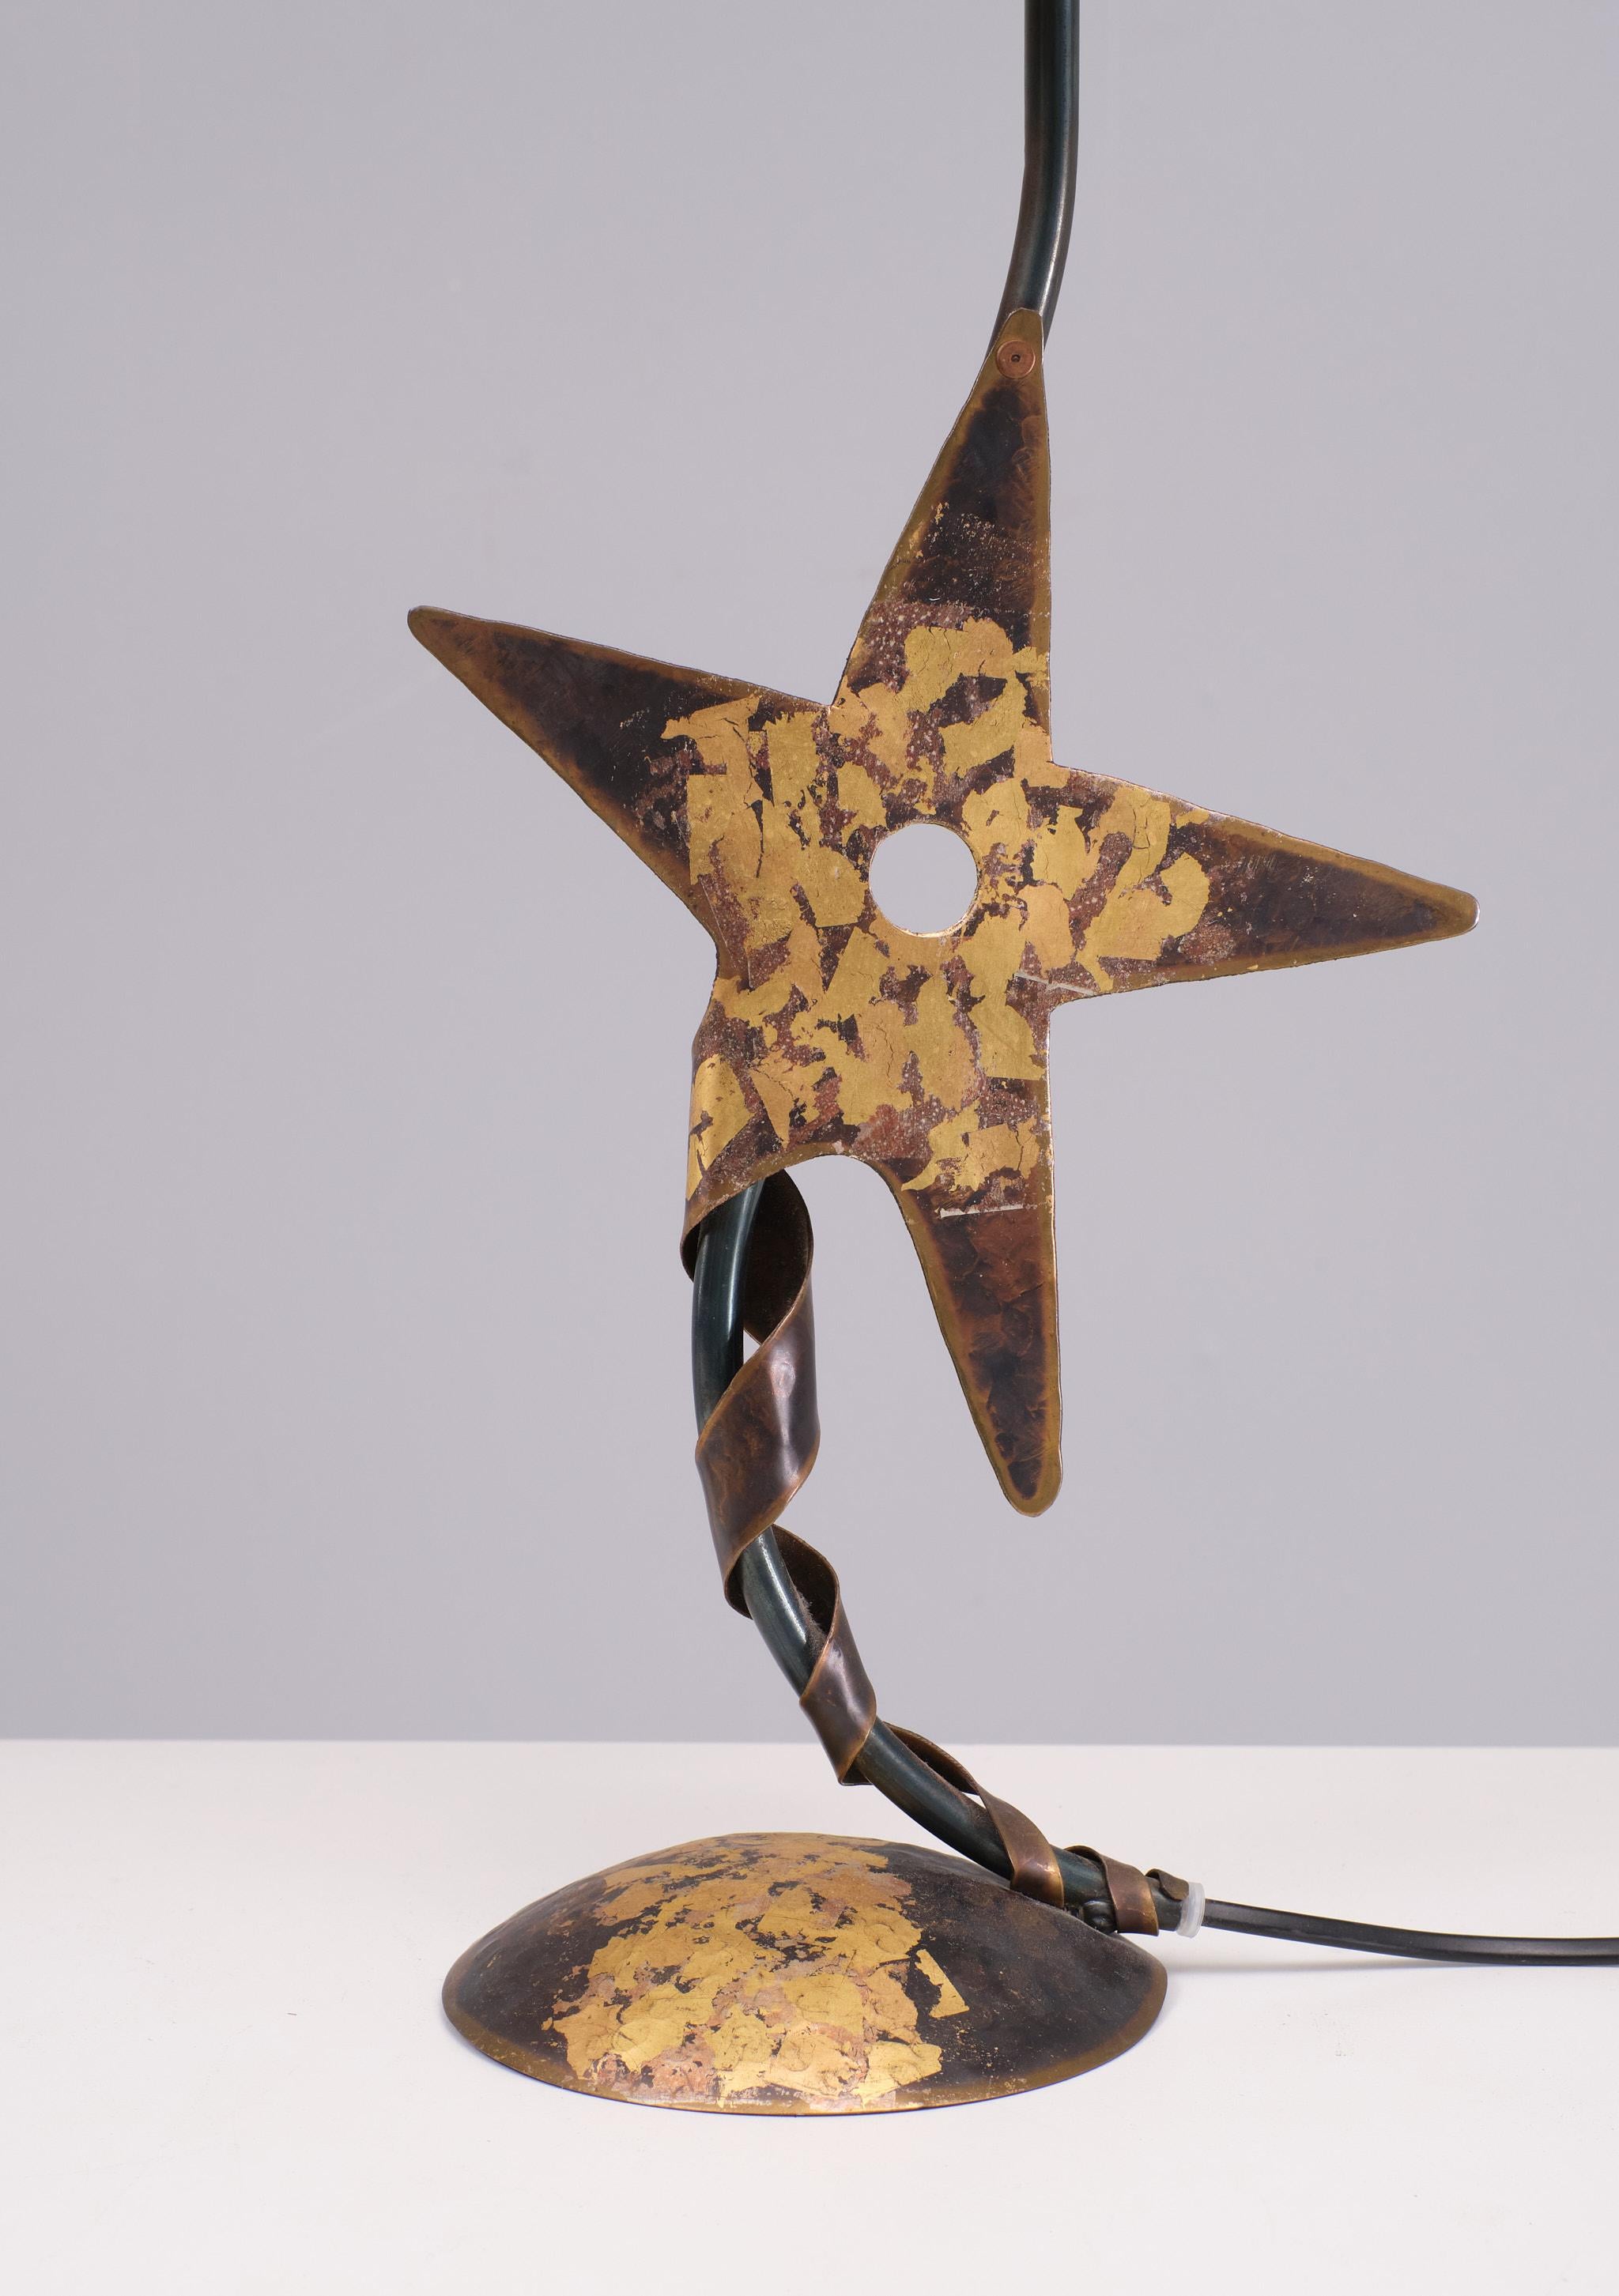 Único  Lámpara de sobremesa de cobre hecha a mano . diseño de Robert Kostka años 80 
Francia, en forma de estrella, una de las bateas rodea la base. 
pieza única ,viene con su pantalla original de virutas de madera . 
muy buen estado .